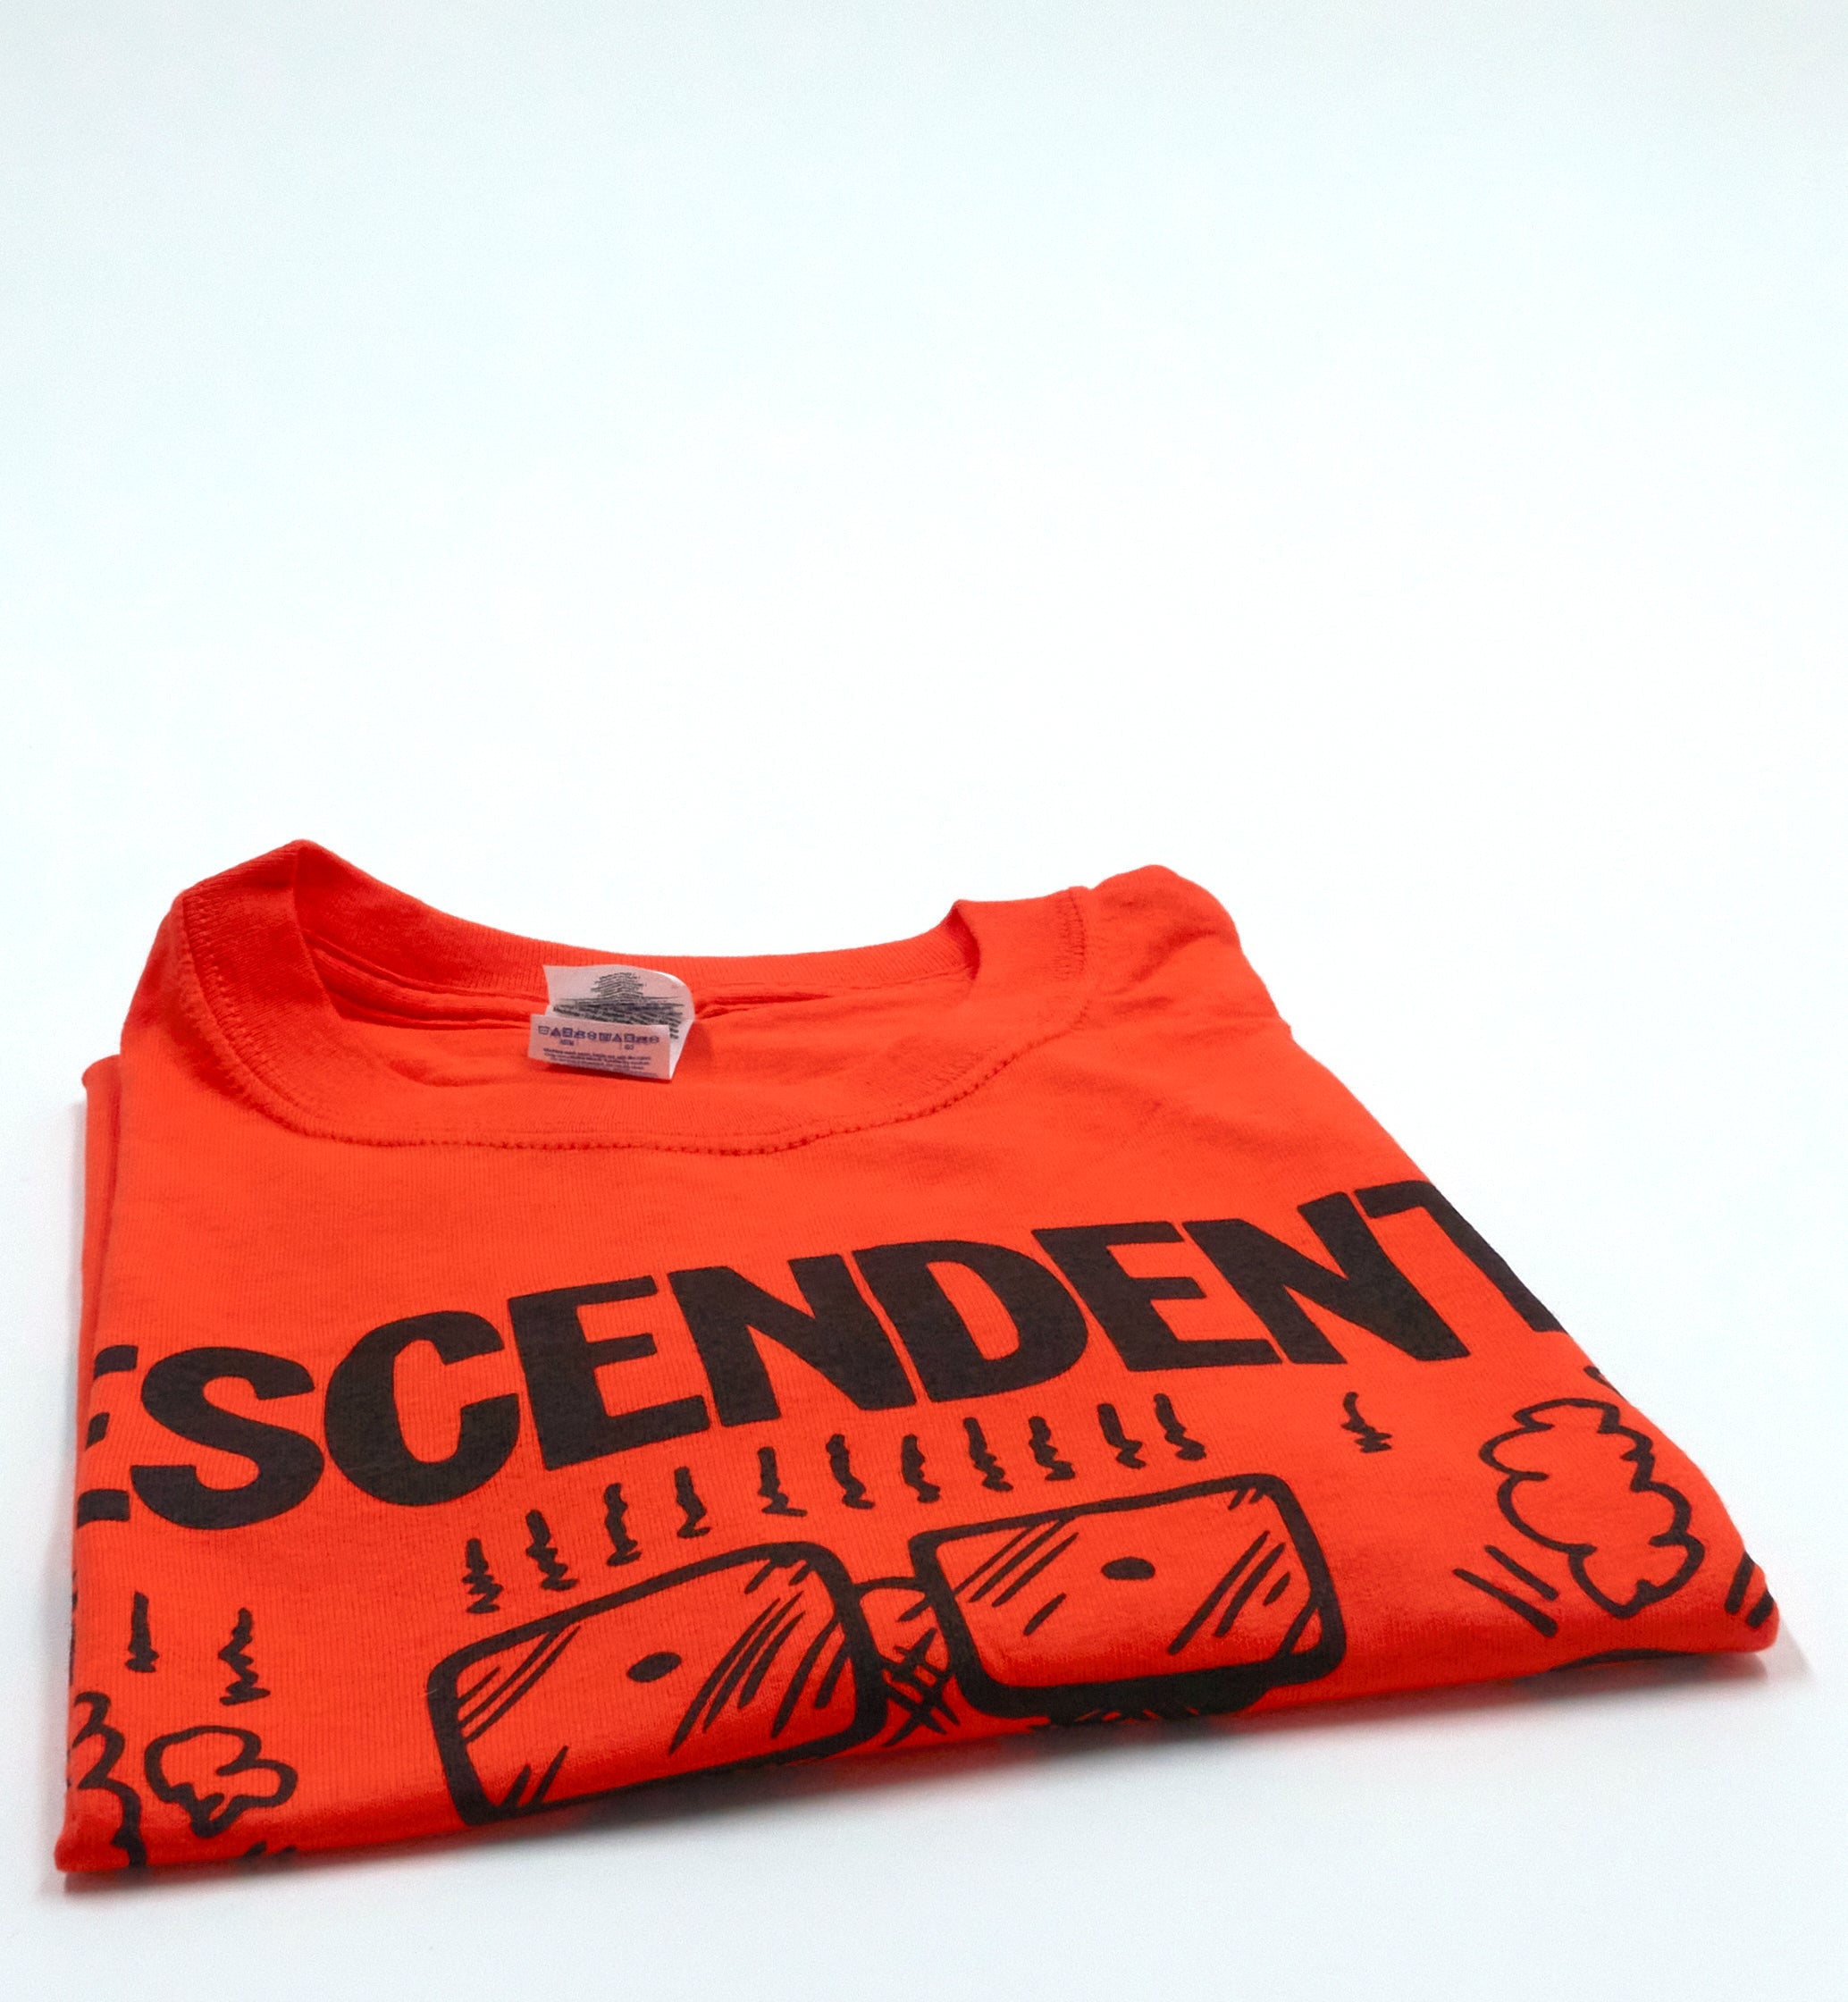 Descendents - SpazzHazard 1/C 2016 Tour Shirt Size XL